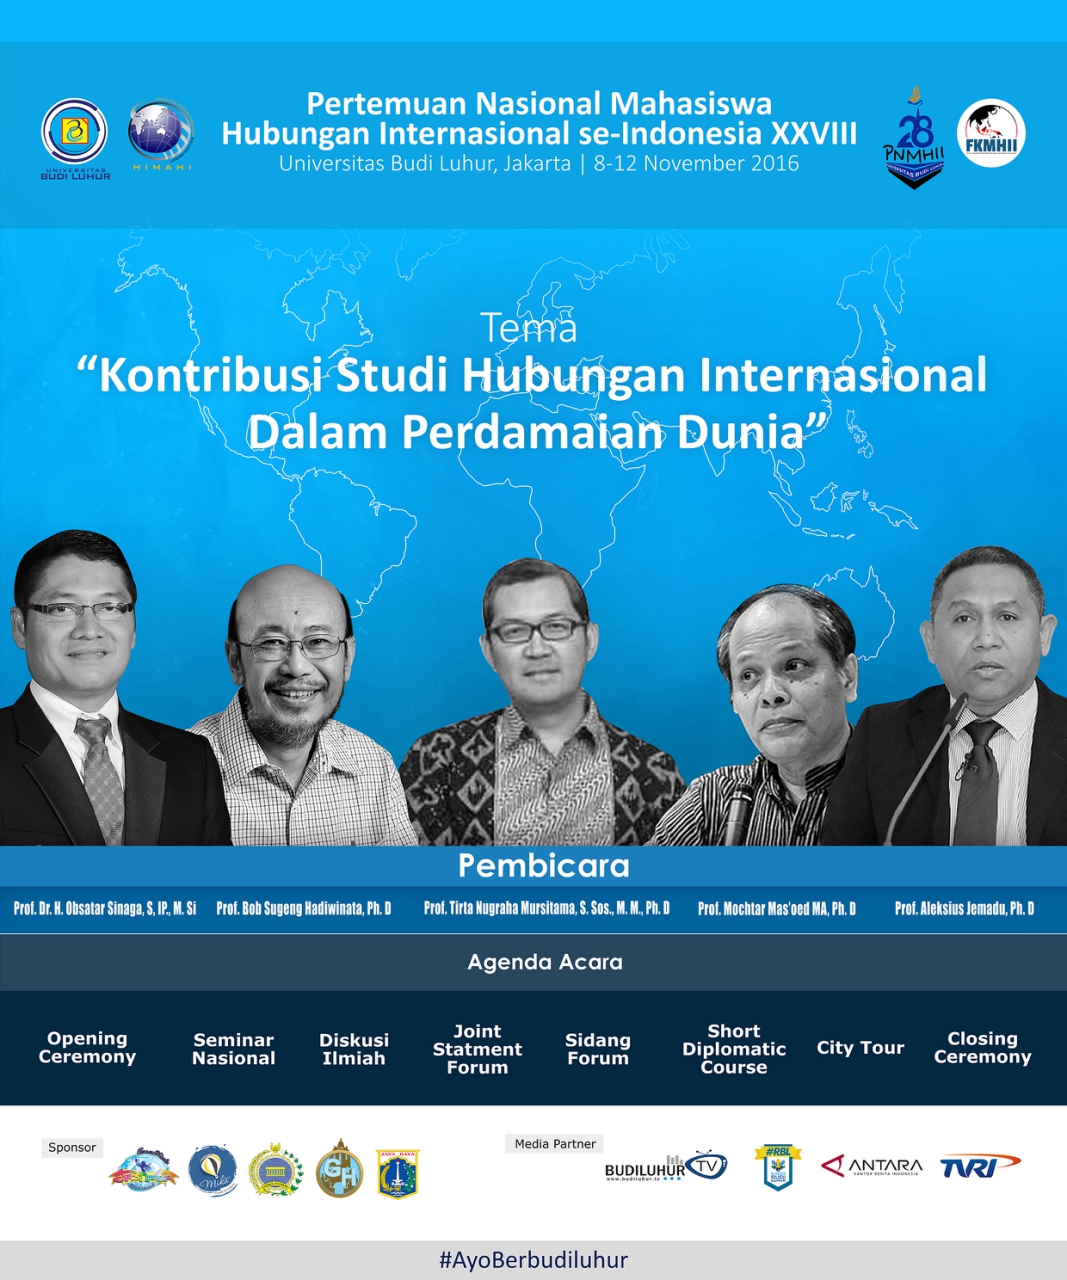 Pertemuan Nasional Mahasiswa Hubungan Internasional se-Indonesia (PNMHII) XXVIII, Universitas Budi Luhur